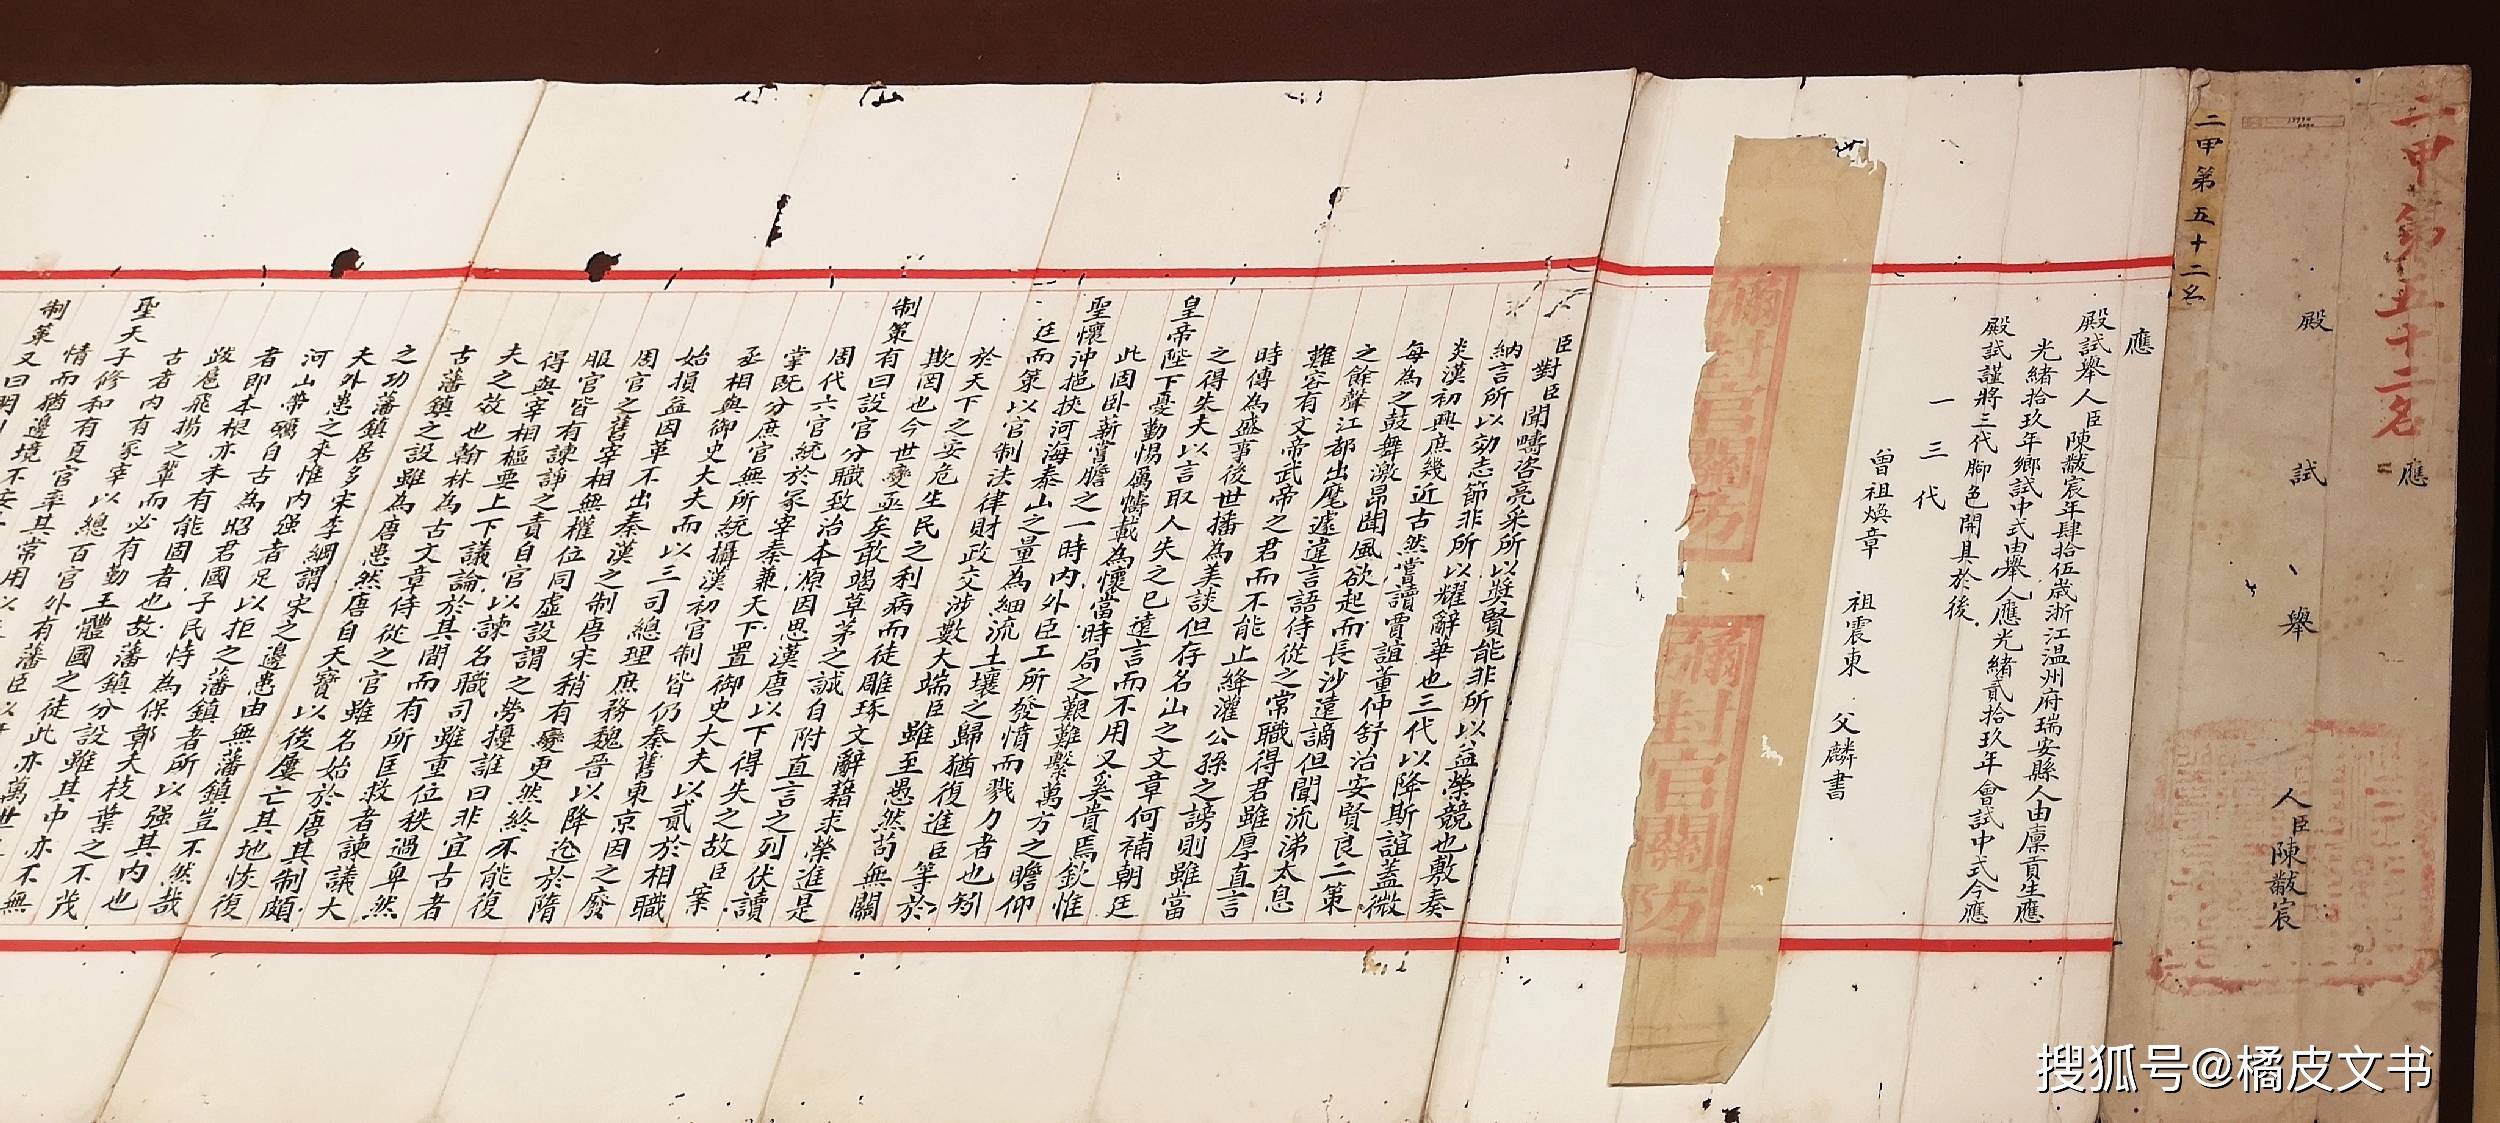 大陆馆藏422年前状元考卷文物价值后来居上台湾故宫自叹不如